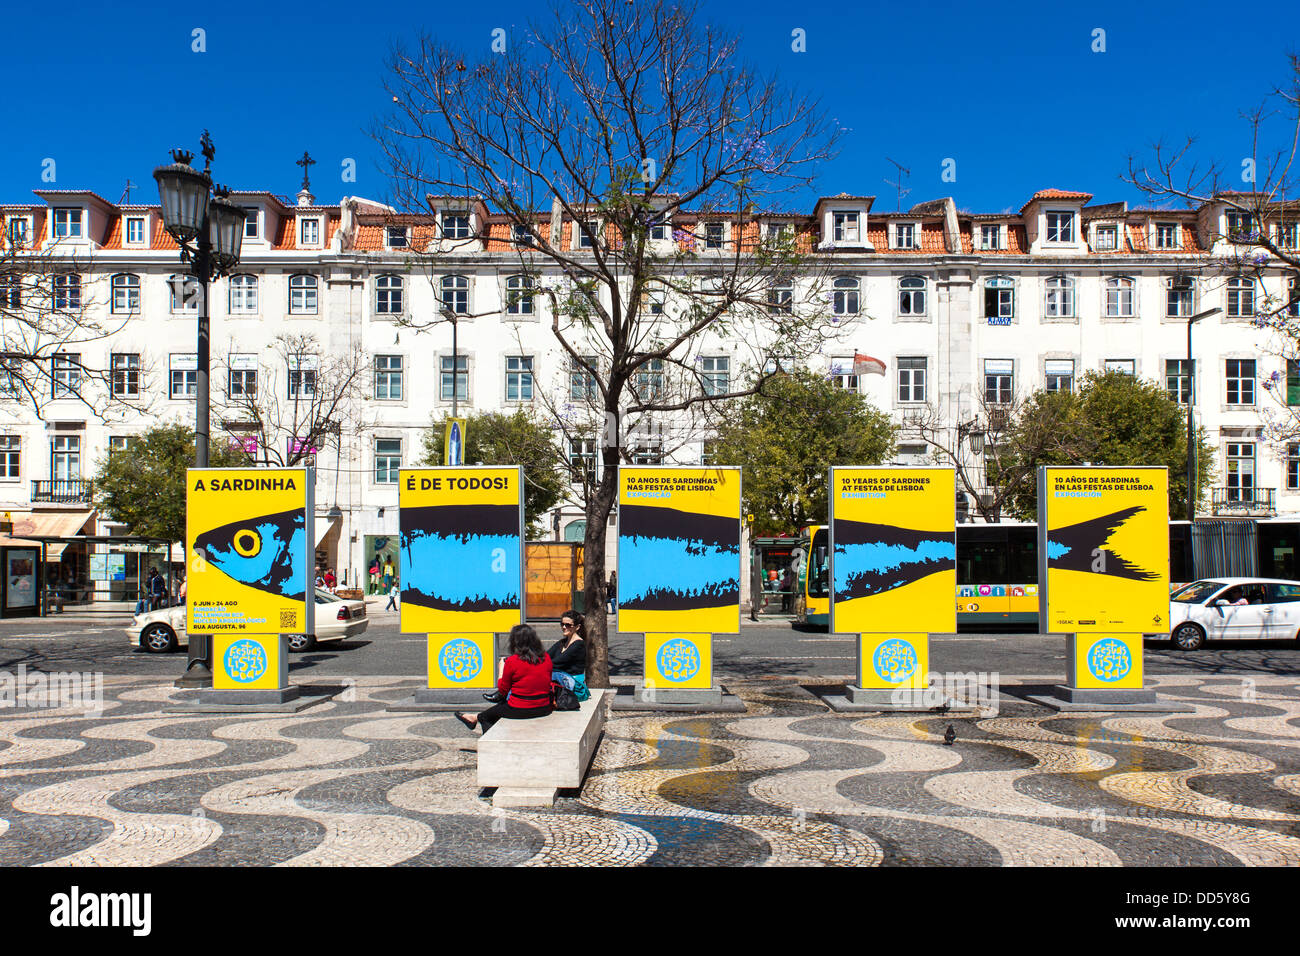 La place Rossio, Lisbonne, Portugal, Europe Banque D'Images